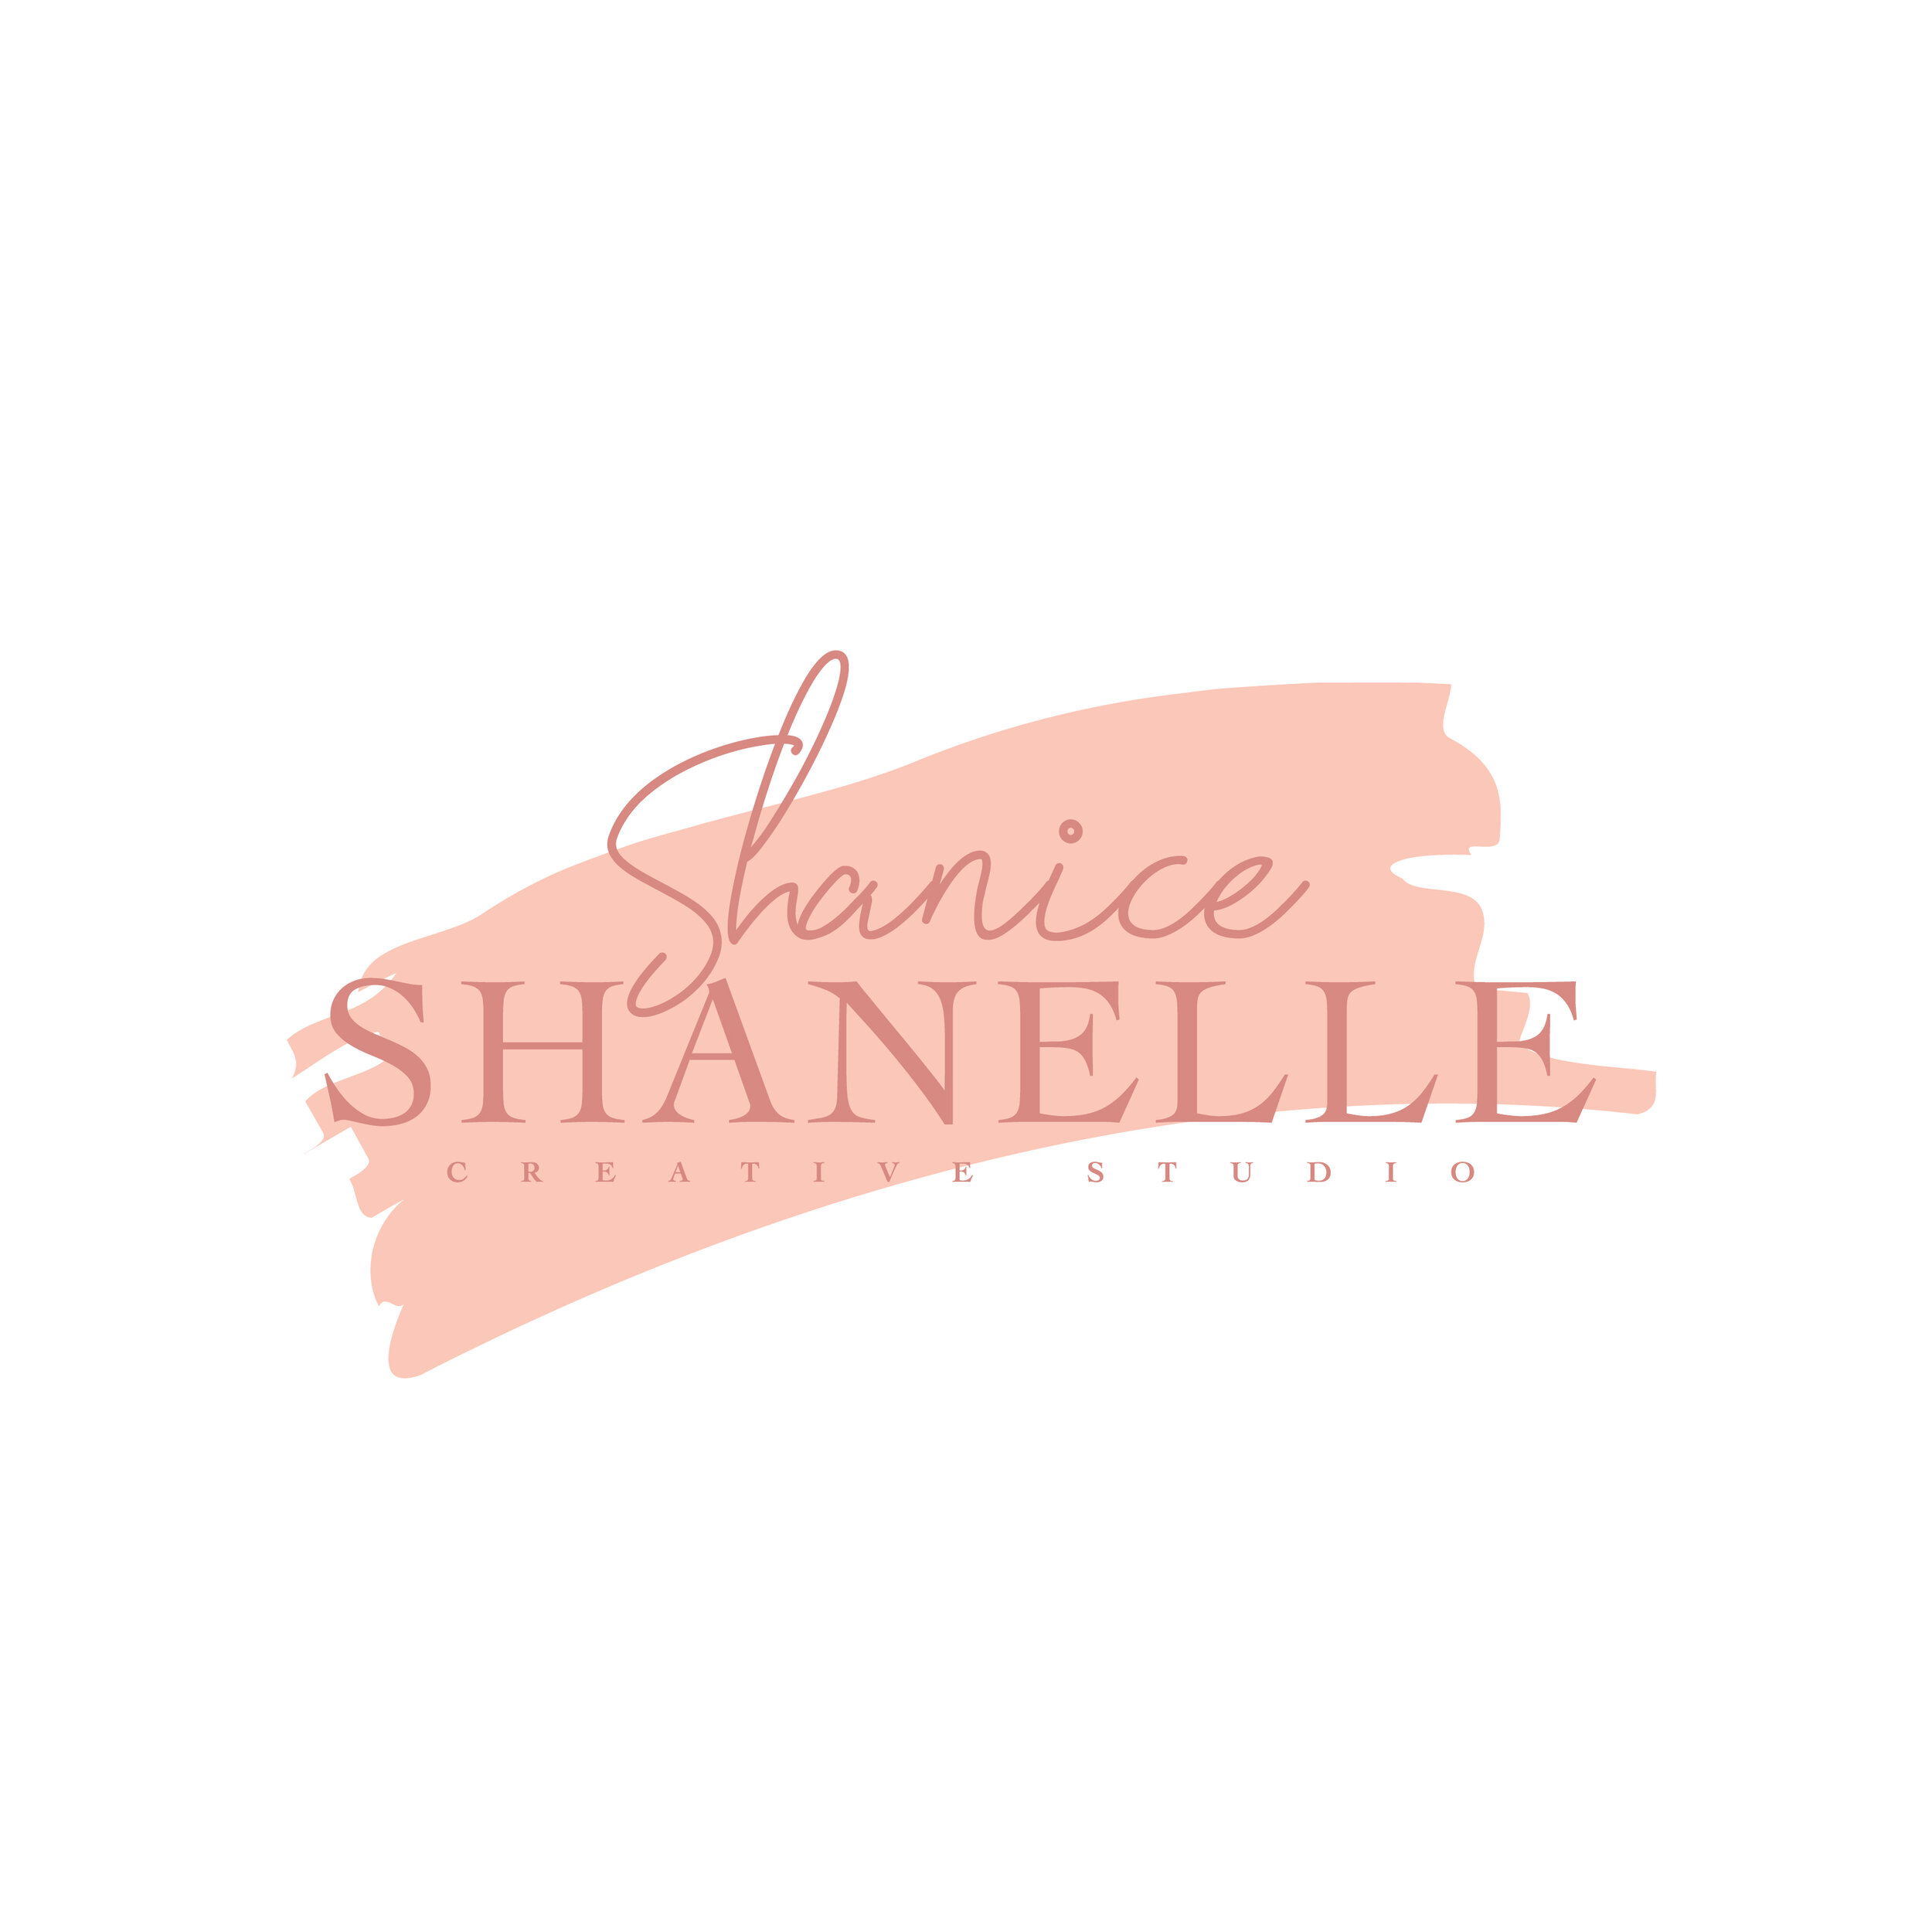 ShaniceShanelle_LogoFiles-01.jpg